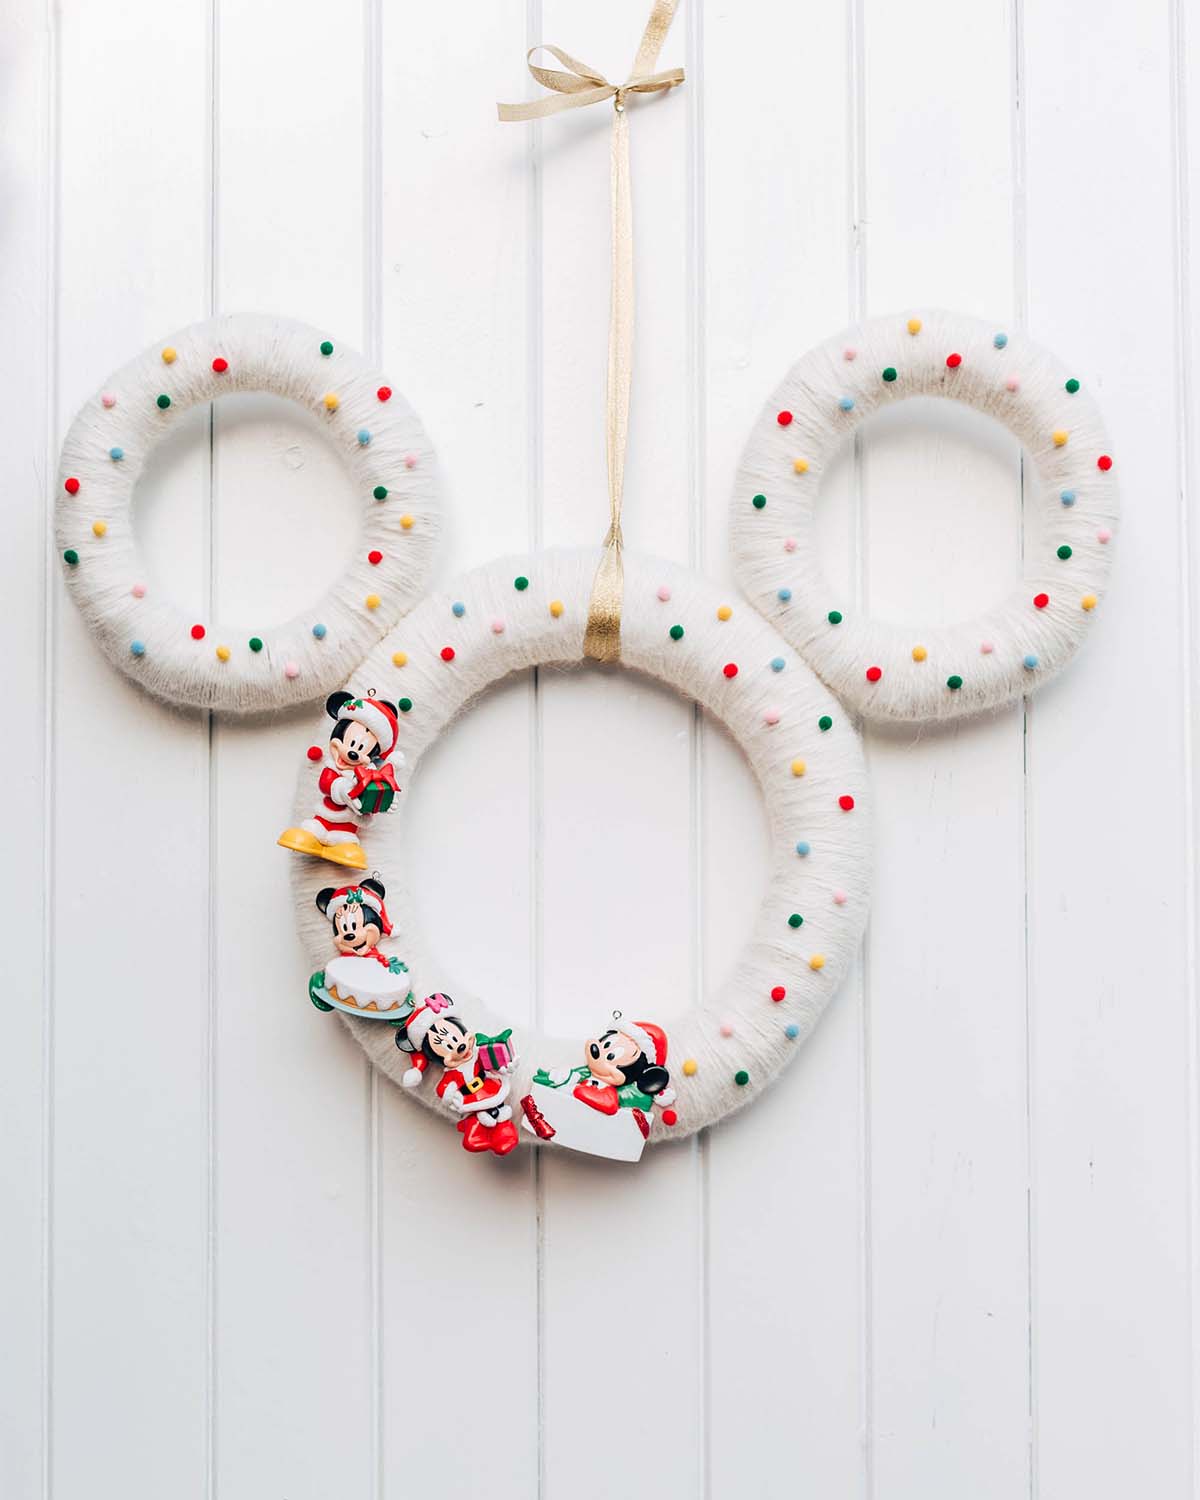 DIY: Disney kerstkrans maken